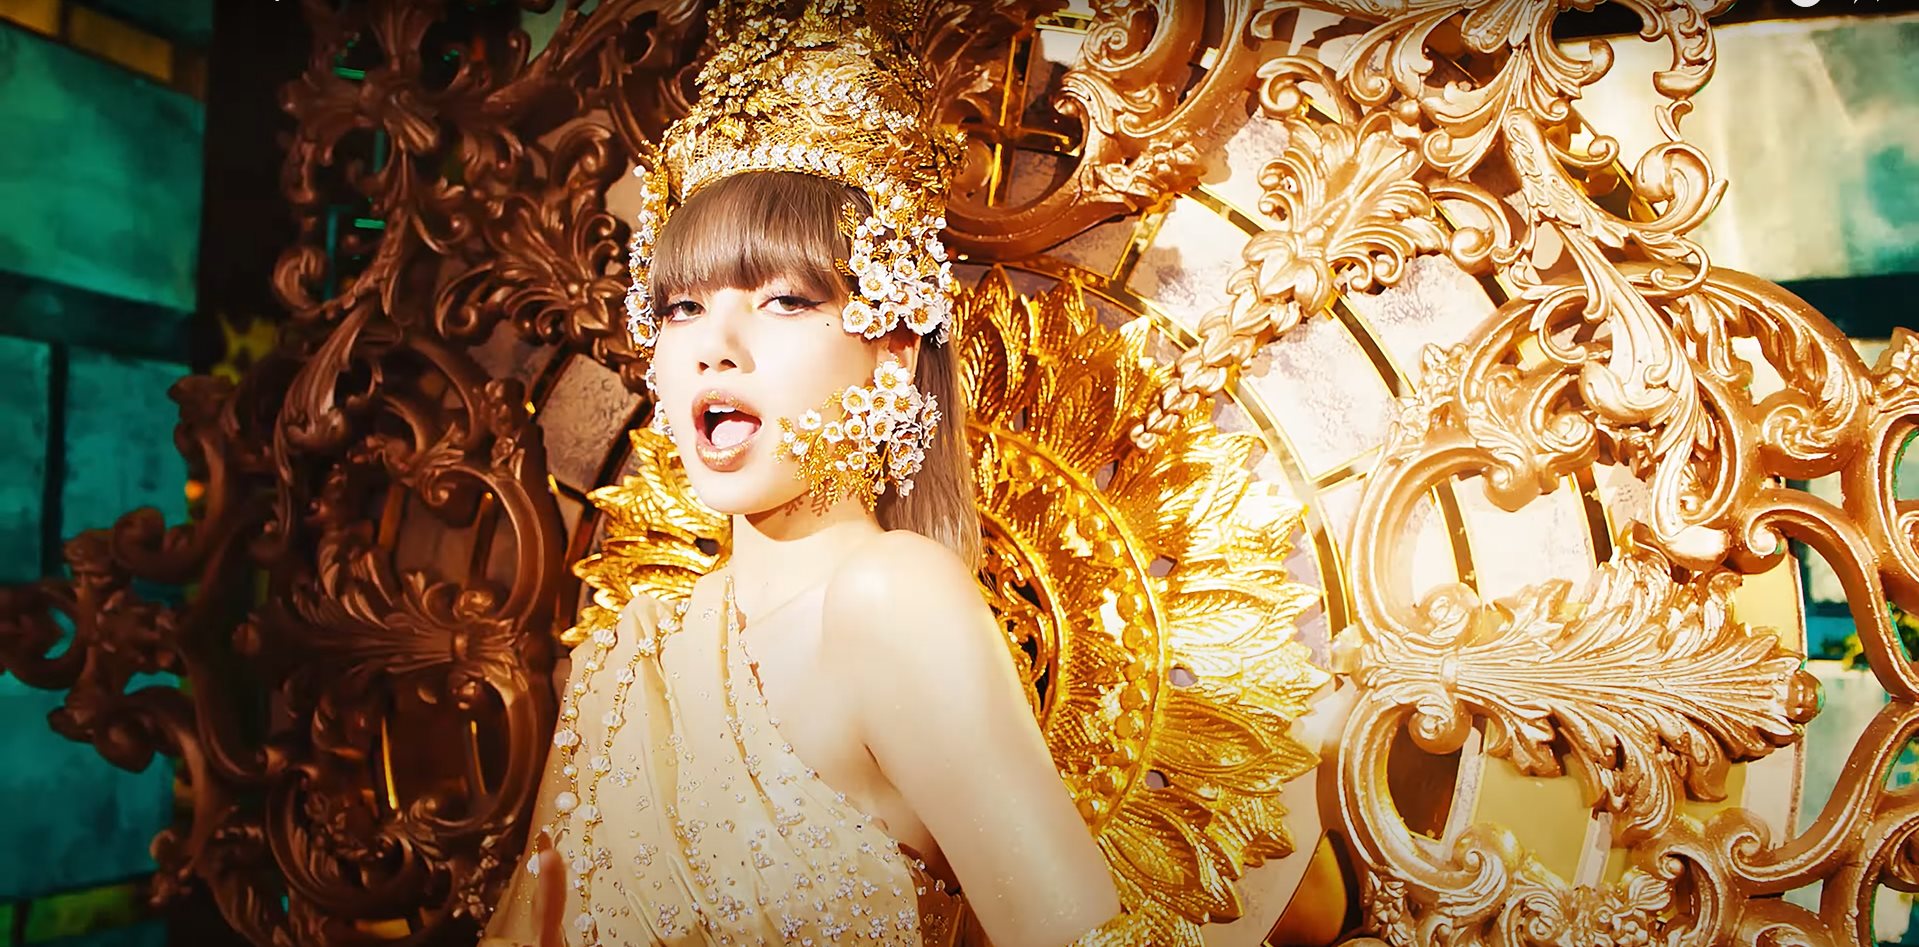 Bên cạnh âm nhạc, vũ đạo thì trang phục của Lisa trong MV cũng mang đậm phong cách Thái Lan